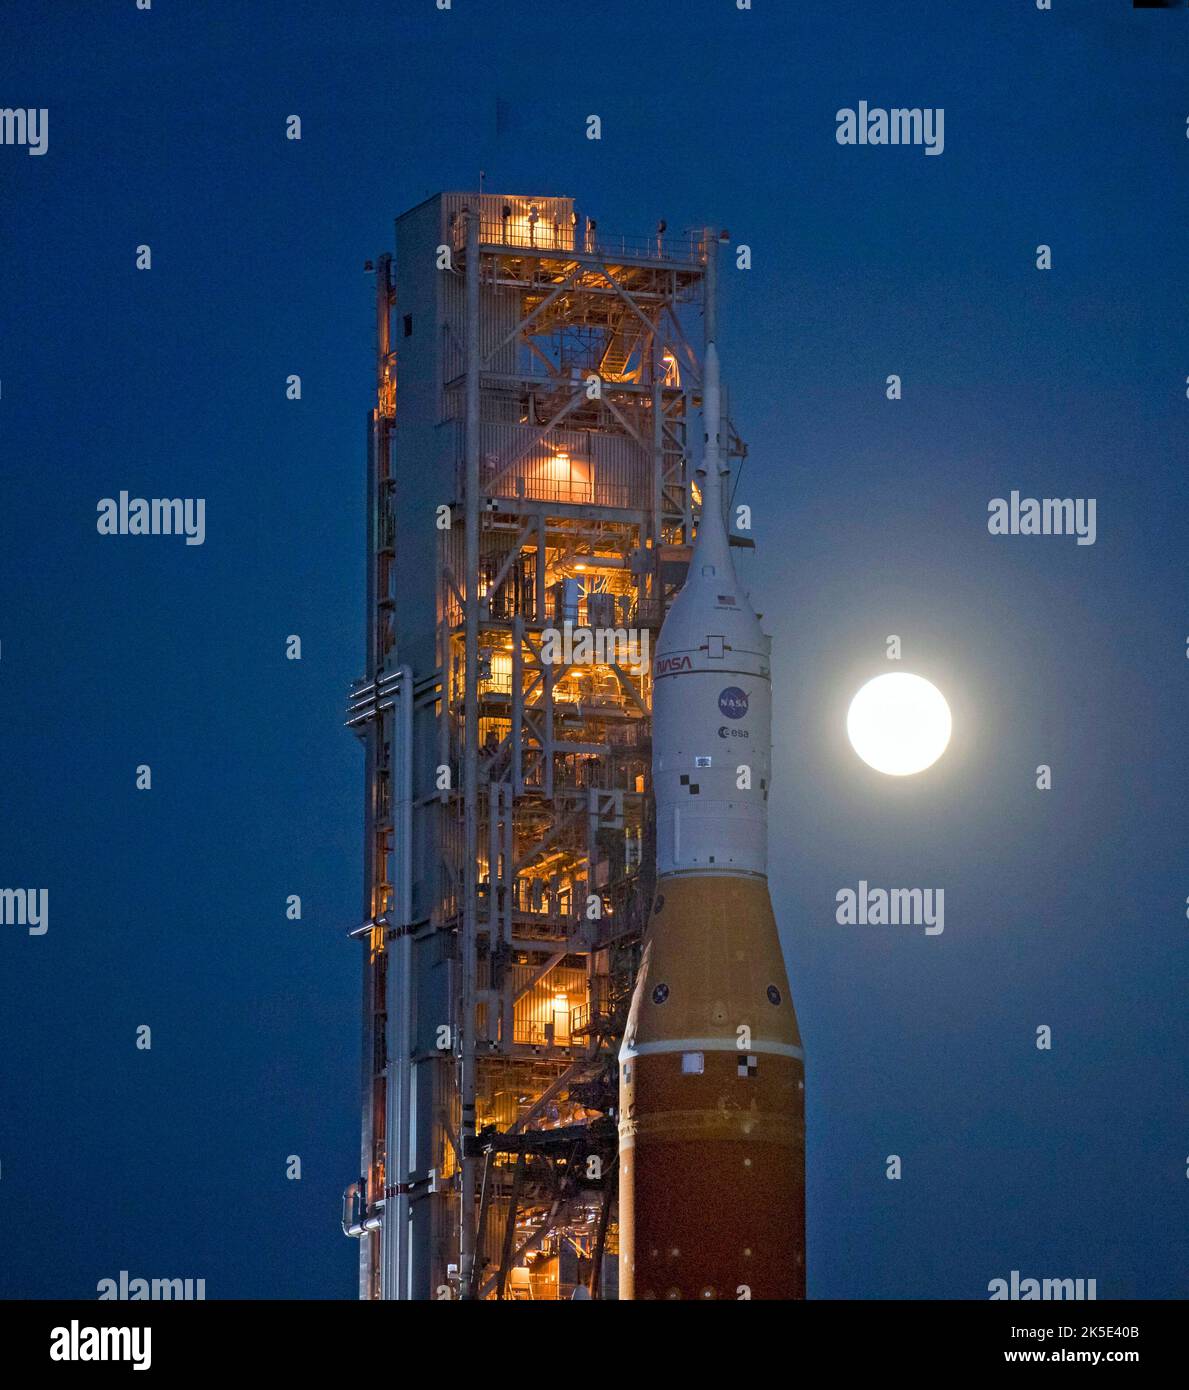 On voit la Lune se lever derrière la fusée SLS (Space Launch System) de la NASA avec l'engin spatial Orion à bord d'un lanceur mobile alors qu'elle se lance pour la première fois dans le complexe de lancement 39B, 17 mars 2022, au Kennedy Space Center de la NASA en Floride, aux États-Unis. Avant l'essai en vol Artemis I de la NASA, la fusée SLS et l'engin spatial Orion entièrement empilés et intégrés feront l'objet d'une répétition en robe humide au Launch Complex 39B pour vérifier les systèmes et pratiquer les procédures de compte à rebours pour le premier lancement. Une version optimisée d'une image d'origine de la NASA. Crédit: NASA/AGemignani Banque D'Images